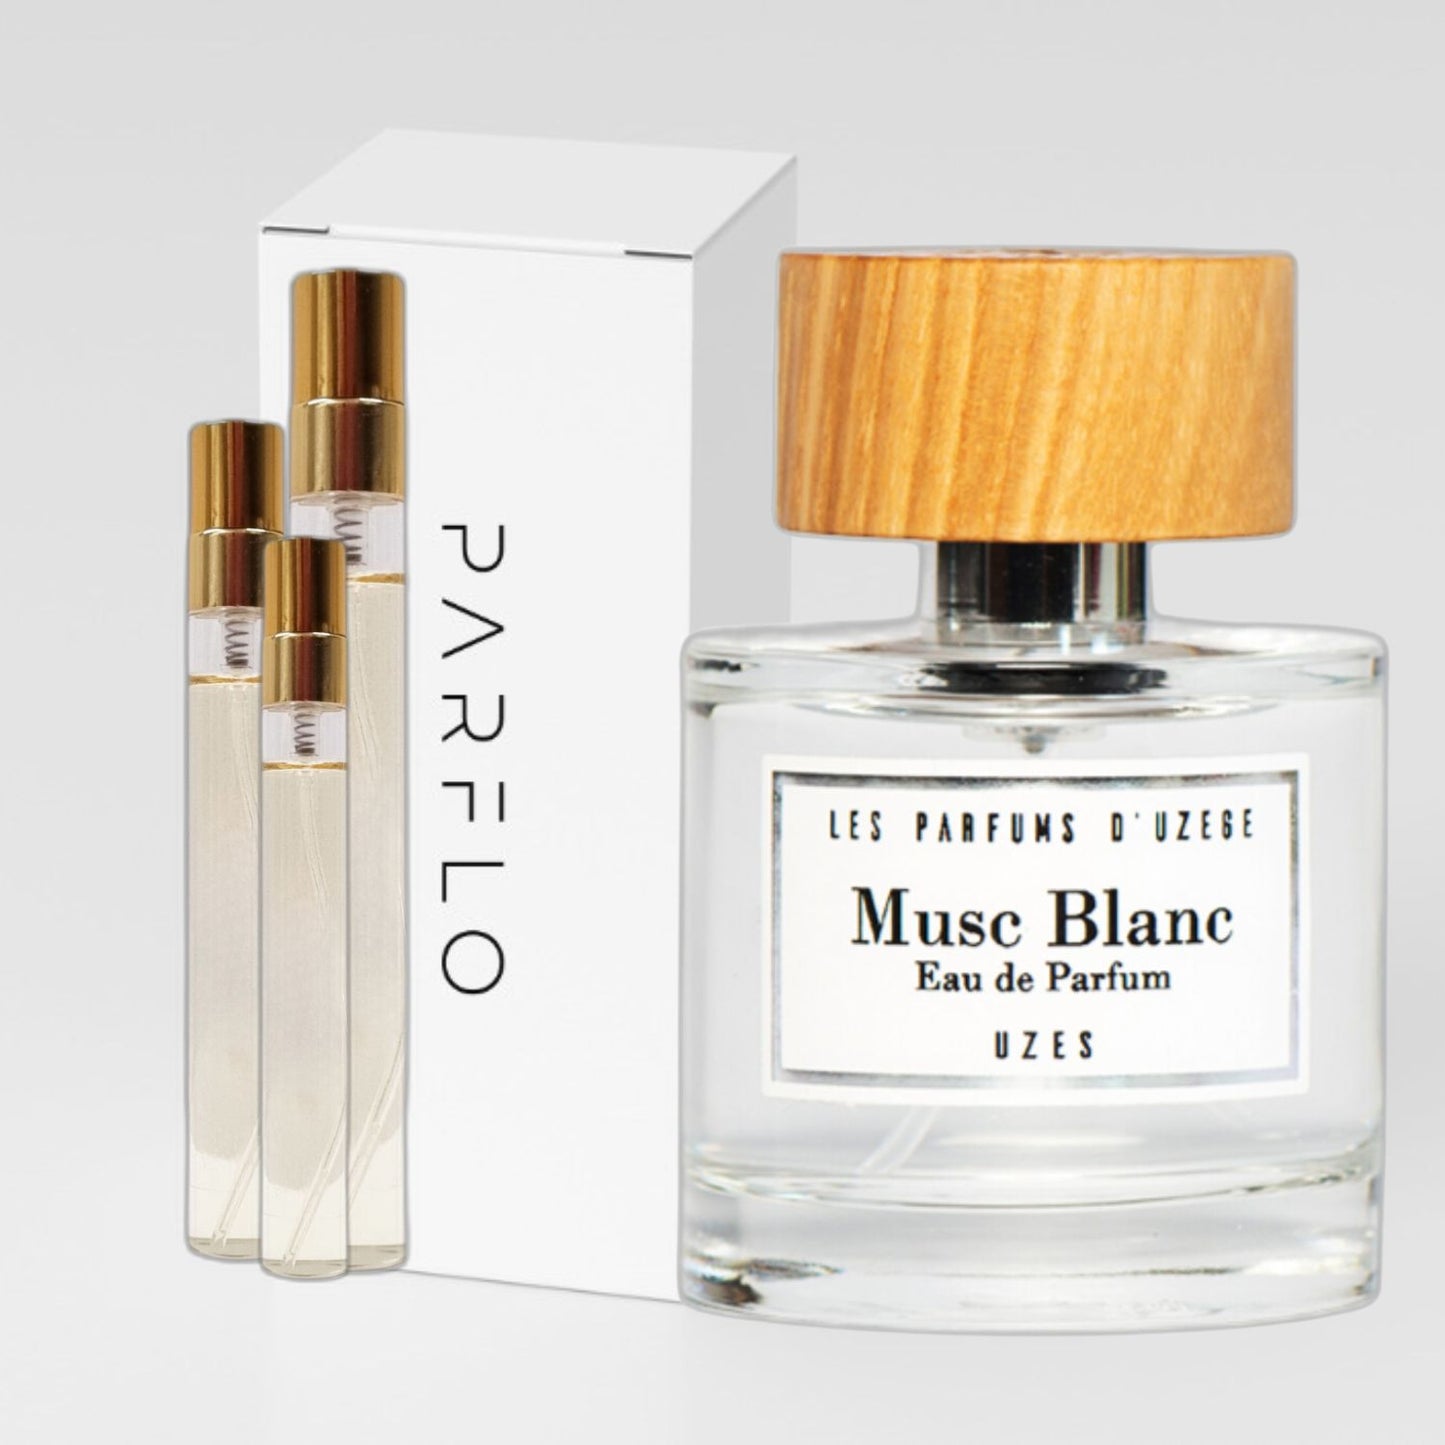 Les Parfums d'Uzege - Musc Blanc| Parfümprobe | Abfüllung